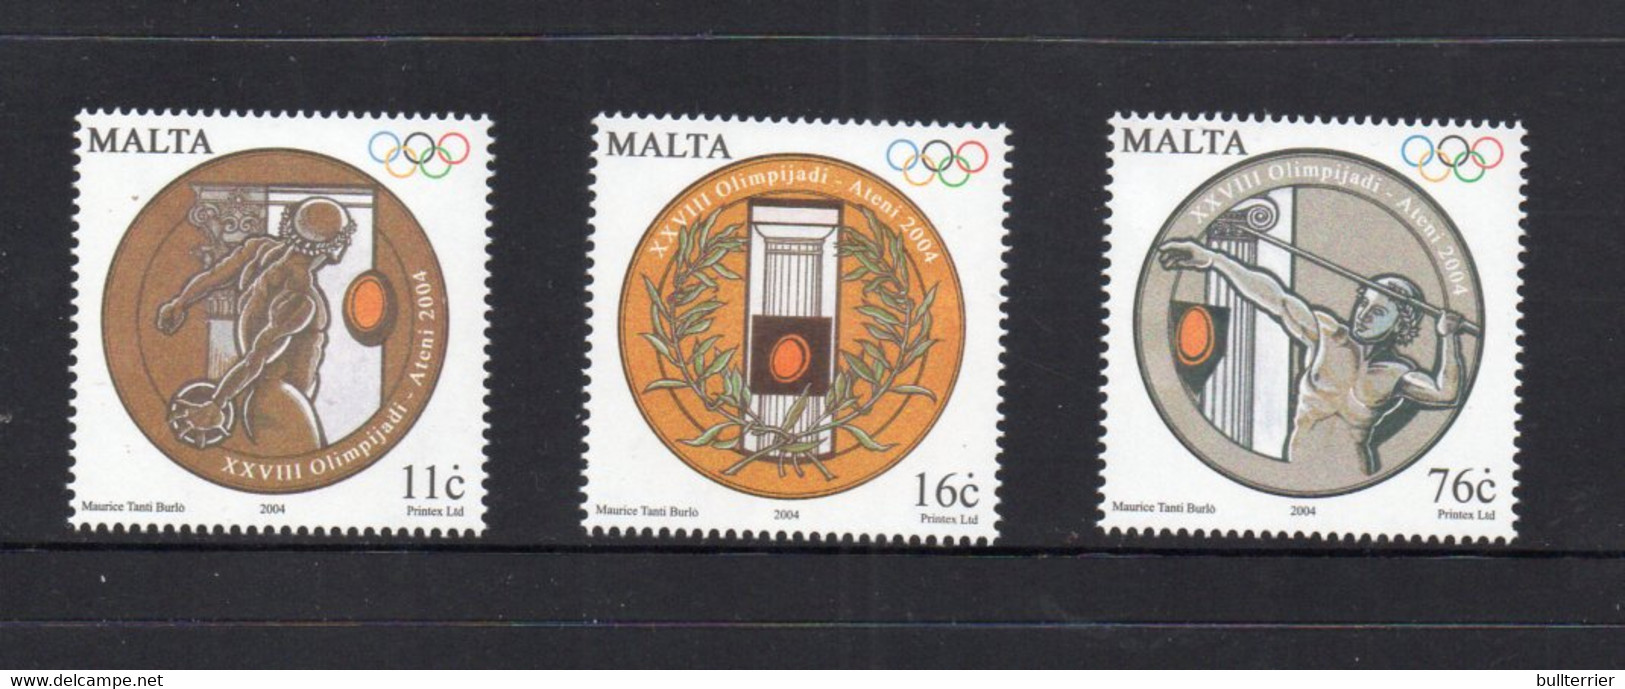 OLYMPICS  - MALTA - 2004 - ATHENS OLYMPICS SET OF 3  MINT NEVER HINGED - Verano 2004: Atenas - Paralympic